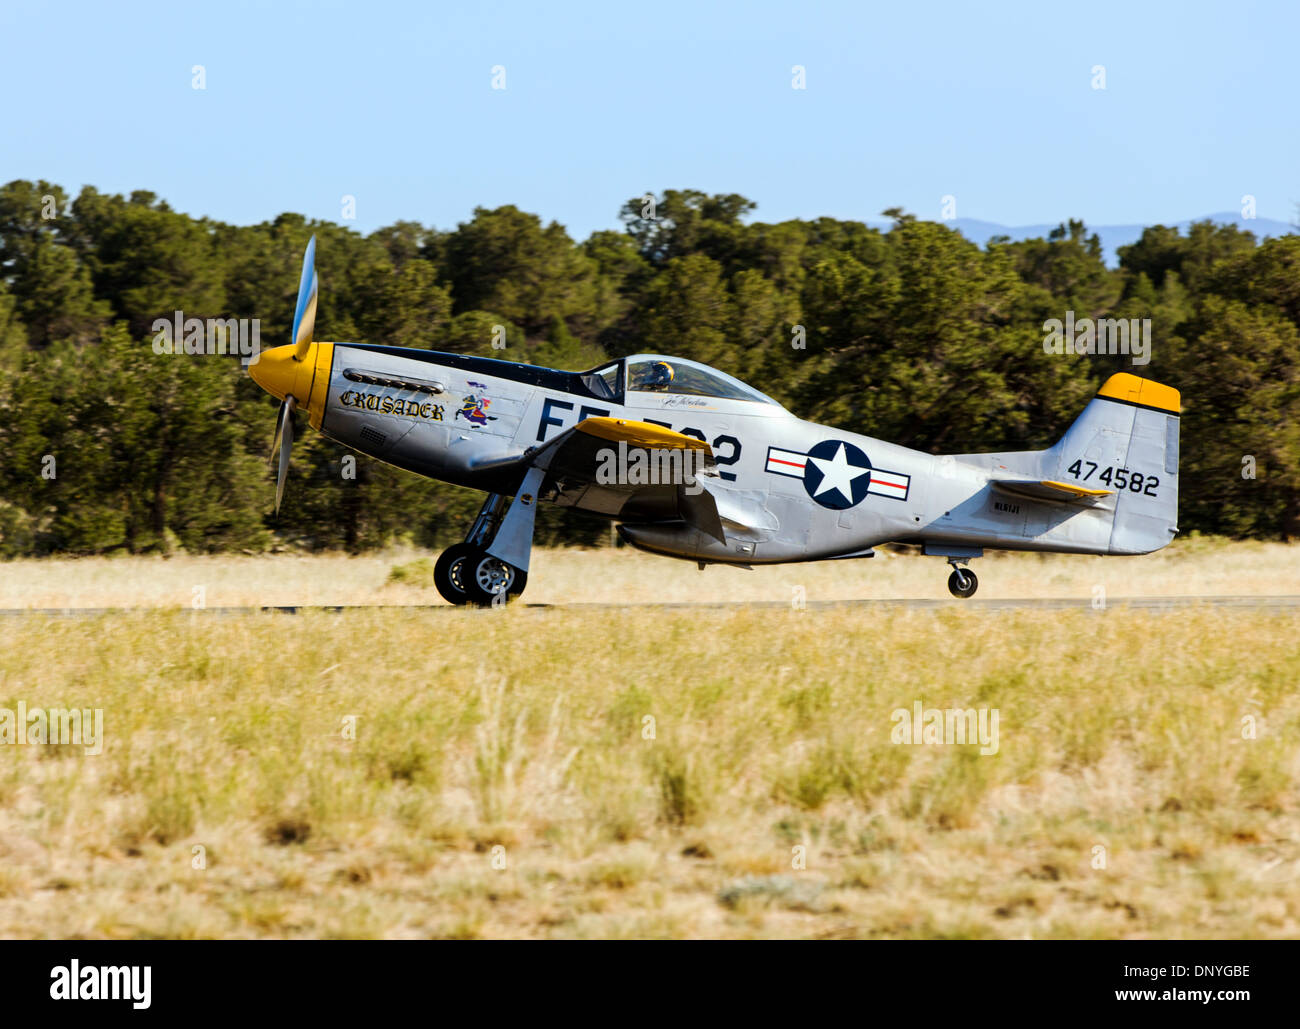 North American Aviation p-51 Mustang, amerikanischen Langstrecken, einsitzigen Jäger und Jagdbomber, landet auf dem Flughafen von Colorado. Stockfoto